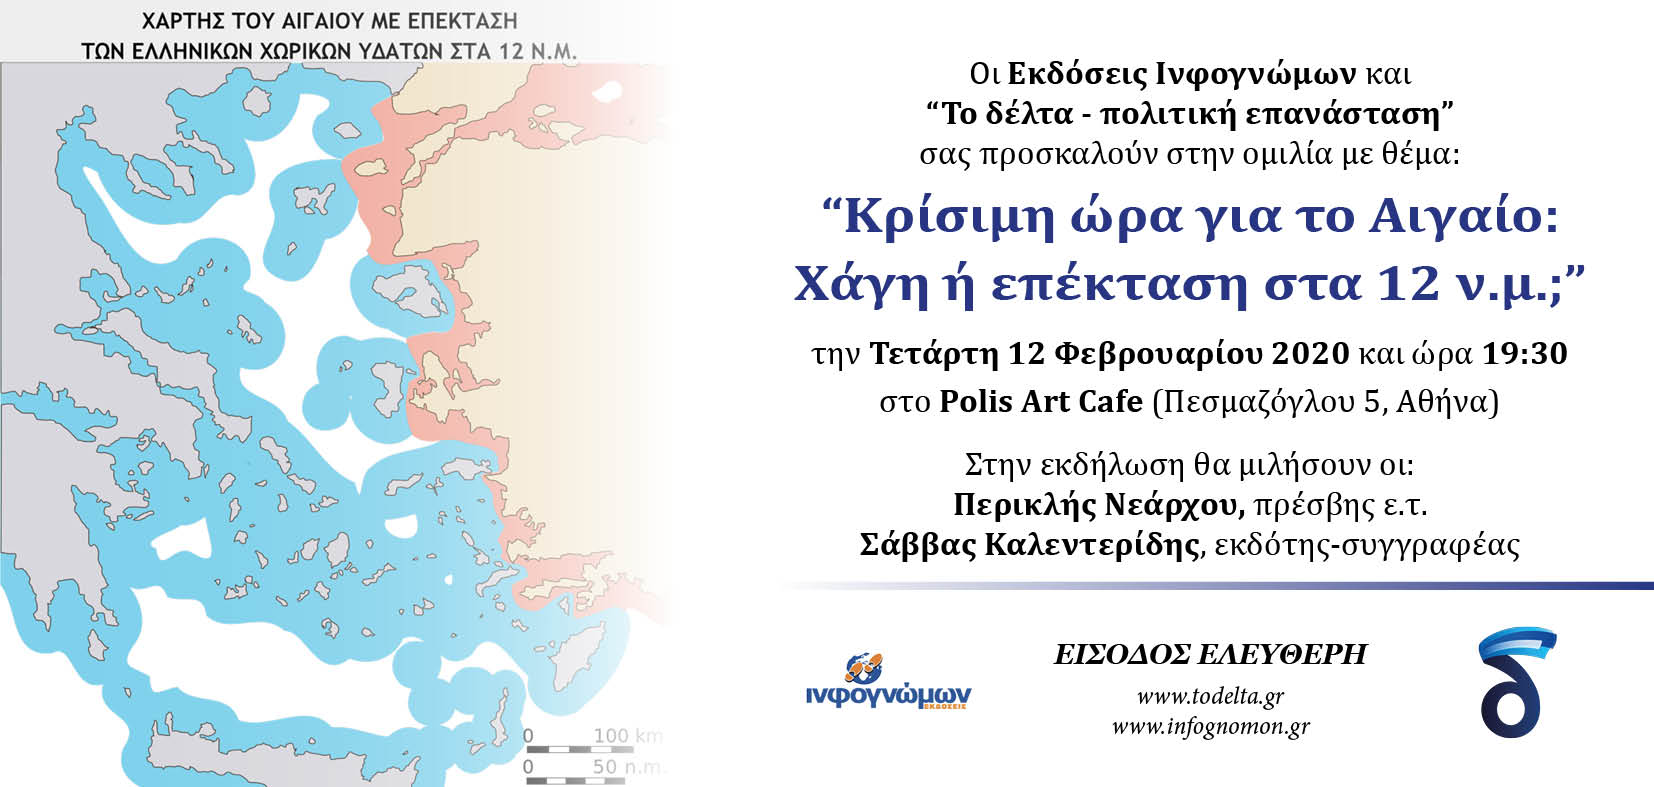 Τετάρτη, 12 Φεβρουαρίου η εκδήλωση “Κρίσιμη ώρα για το Αιγαίο: Χάγη ή επέκταση στα 12 ν.μ.;” – Ομιλητές οι κ.κ. Περικλής Νεάρχου και Σάββας Καλεντερίδης,